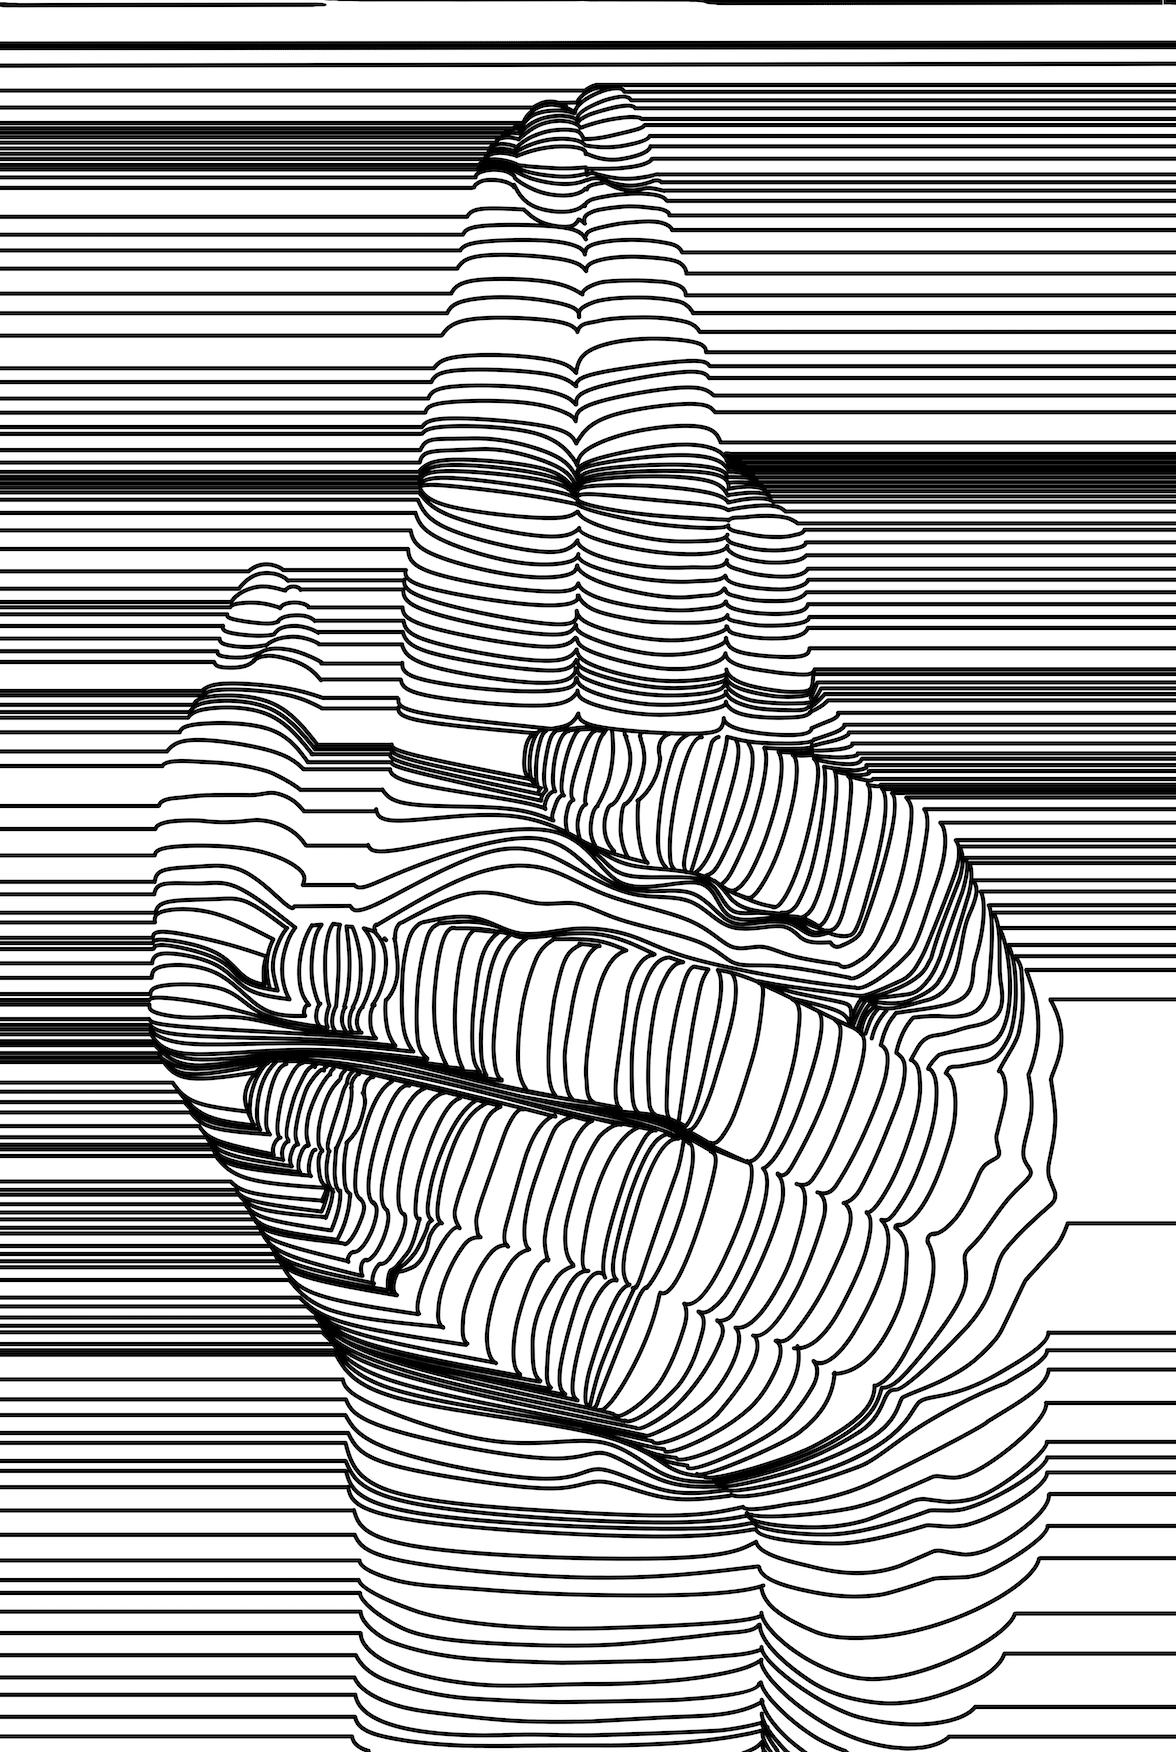 Hands (minimal lines)